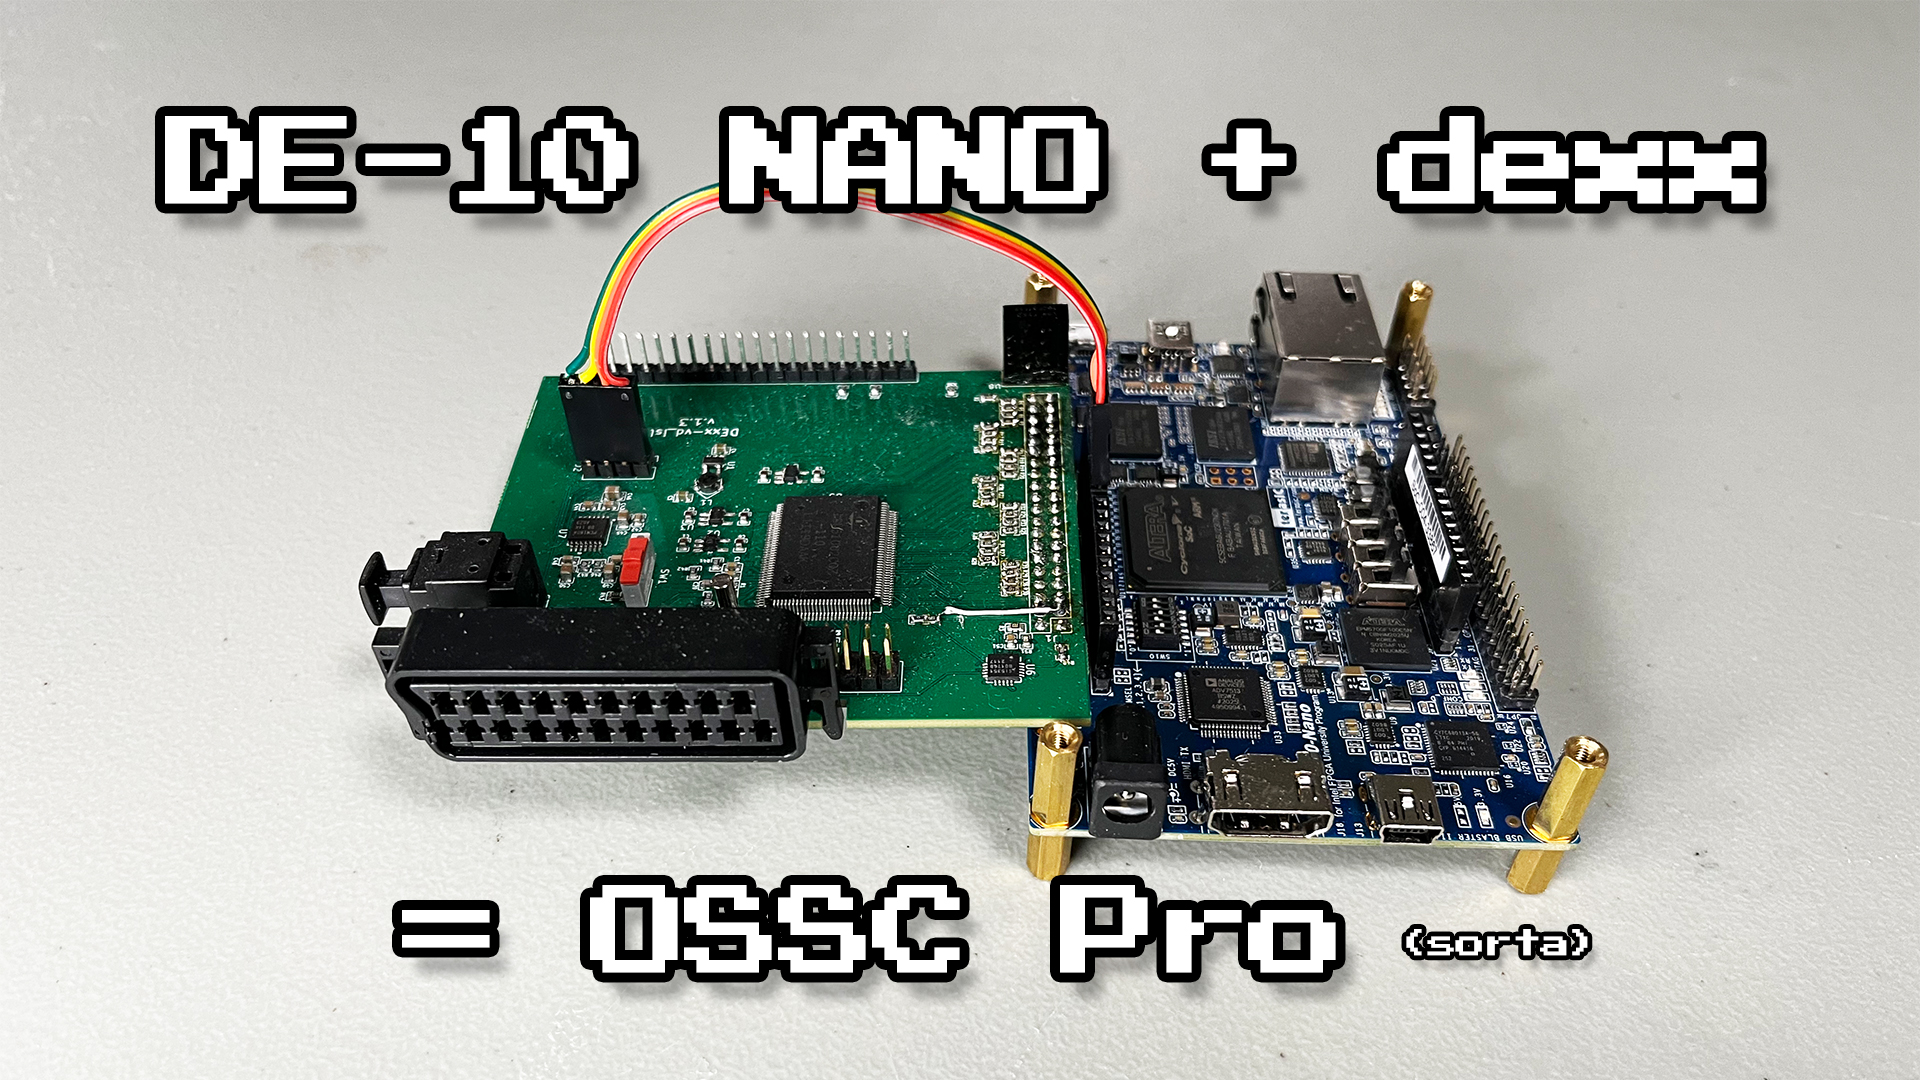 MiSTer FPGAで使われているDE10-Nanoボードを『OSSC Pro Lite』に変更できるデモが公開